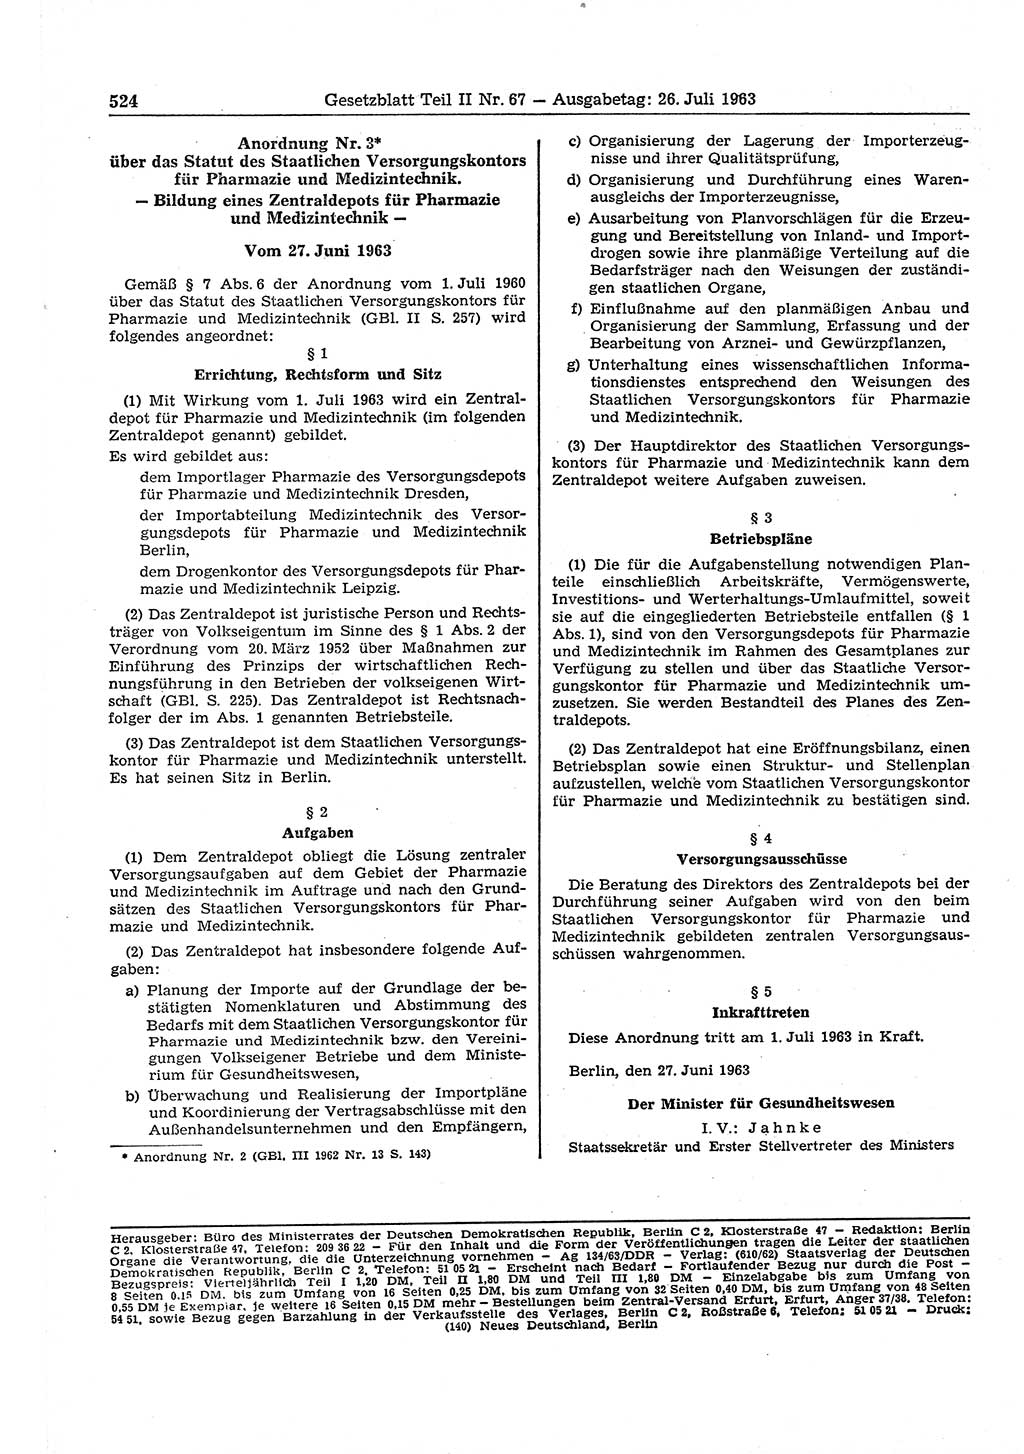 Gesetzblatt (GBl.) der Deutschen Demokratischen Republik (DDR) Teil ⅠⅠ 1963, Seite 524 (GBl. DDR ⅠⅠ 1963, S. 524)